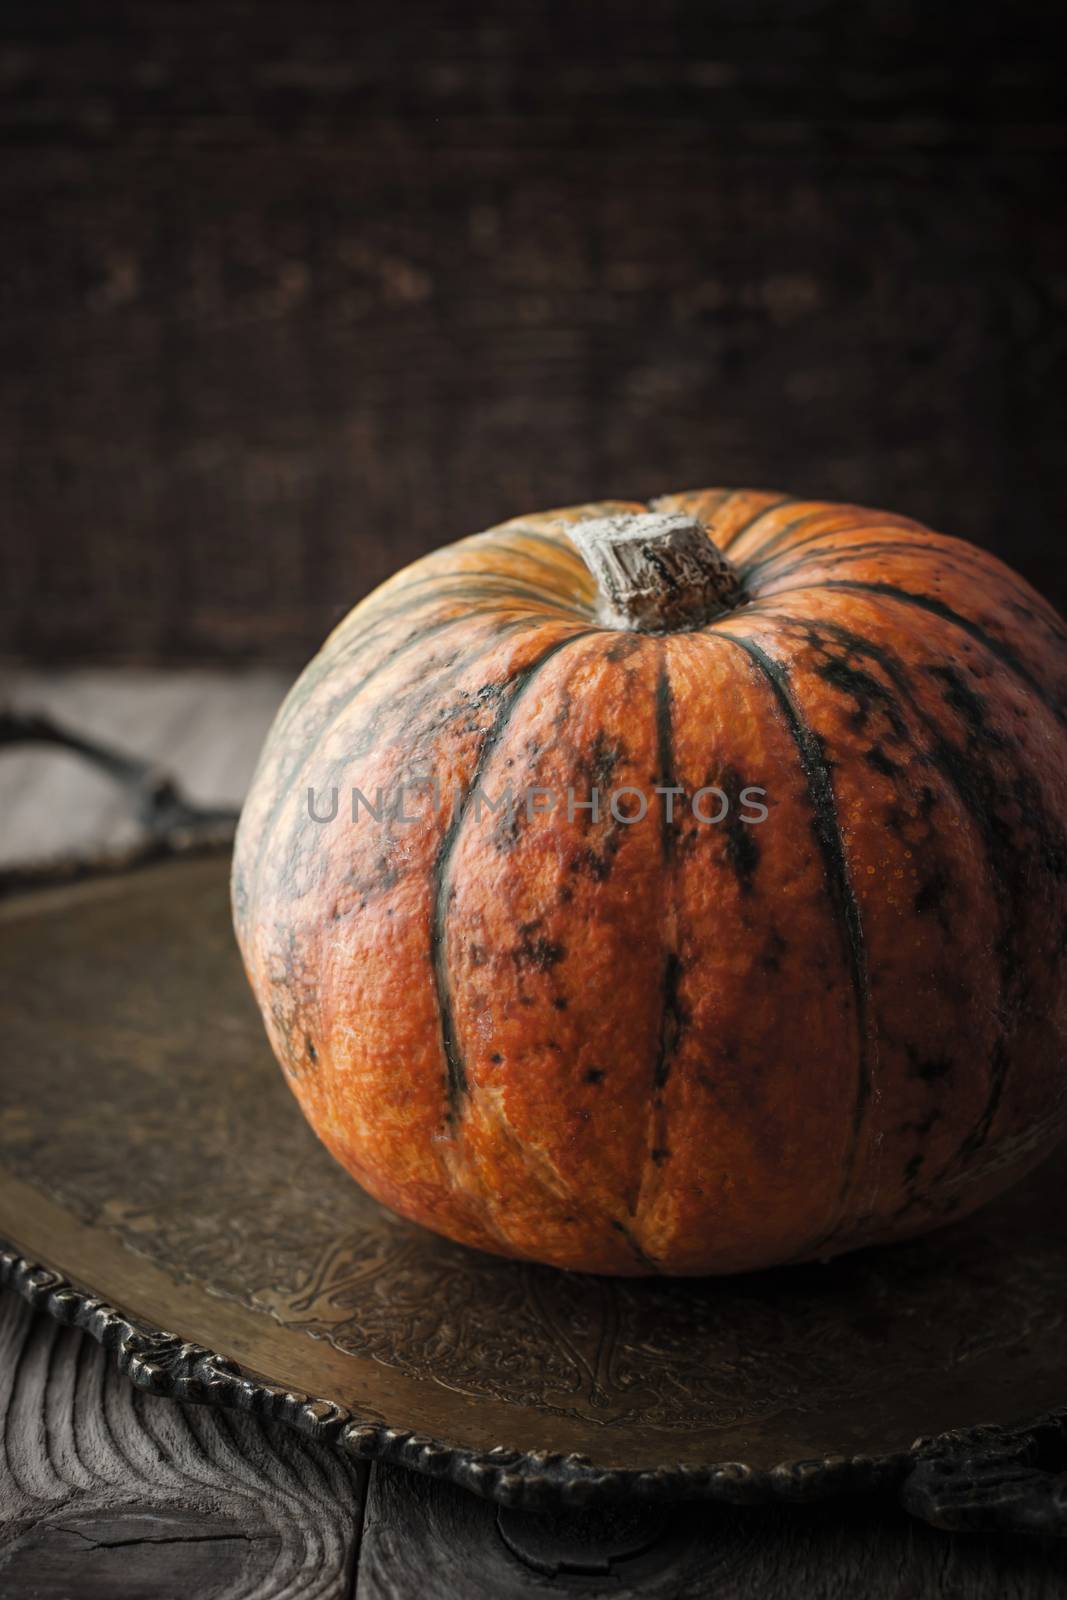 Orange pumpkin with green stripes by Deniskarpenkov